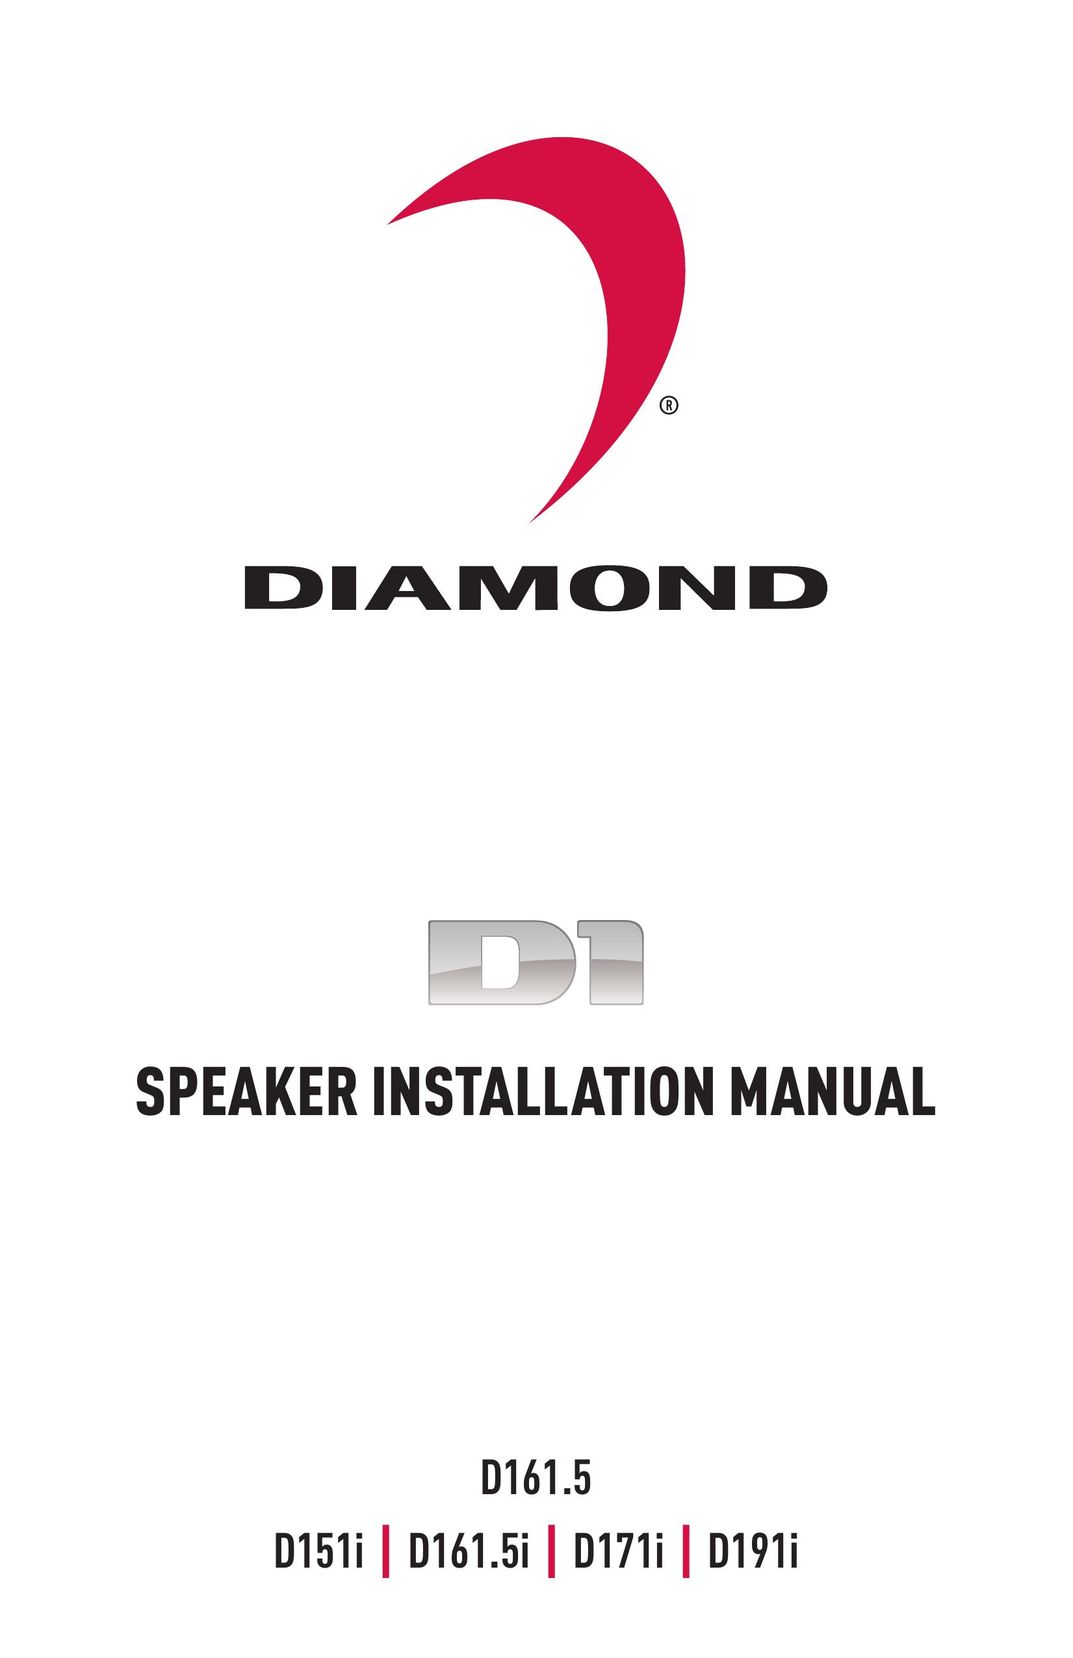 Diamond Audio Technology D191I Speaker User Manual